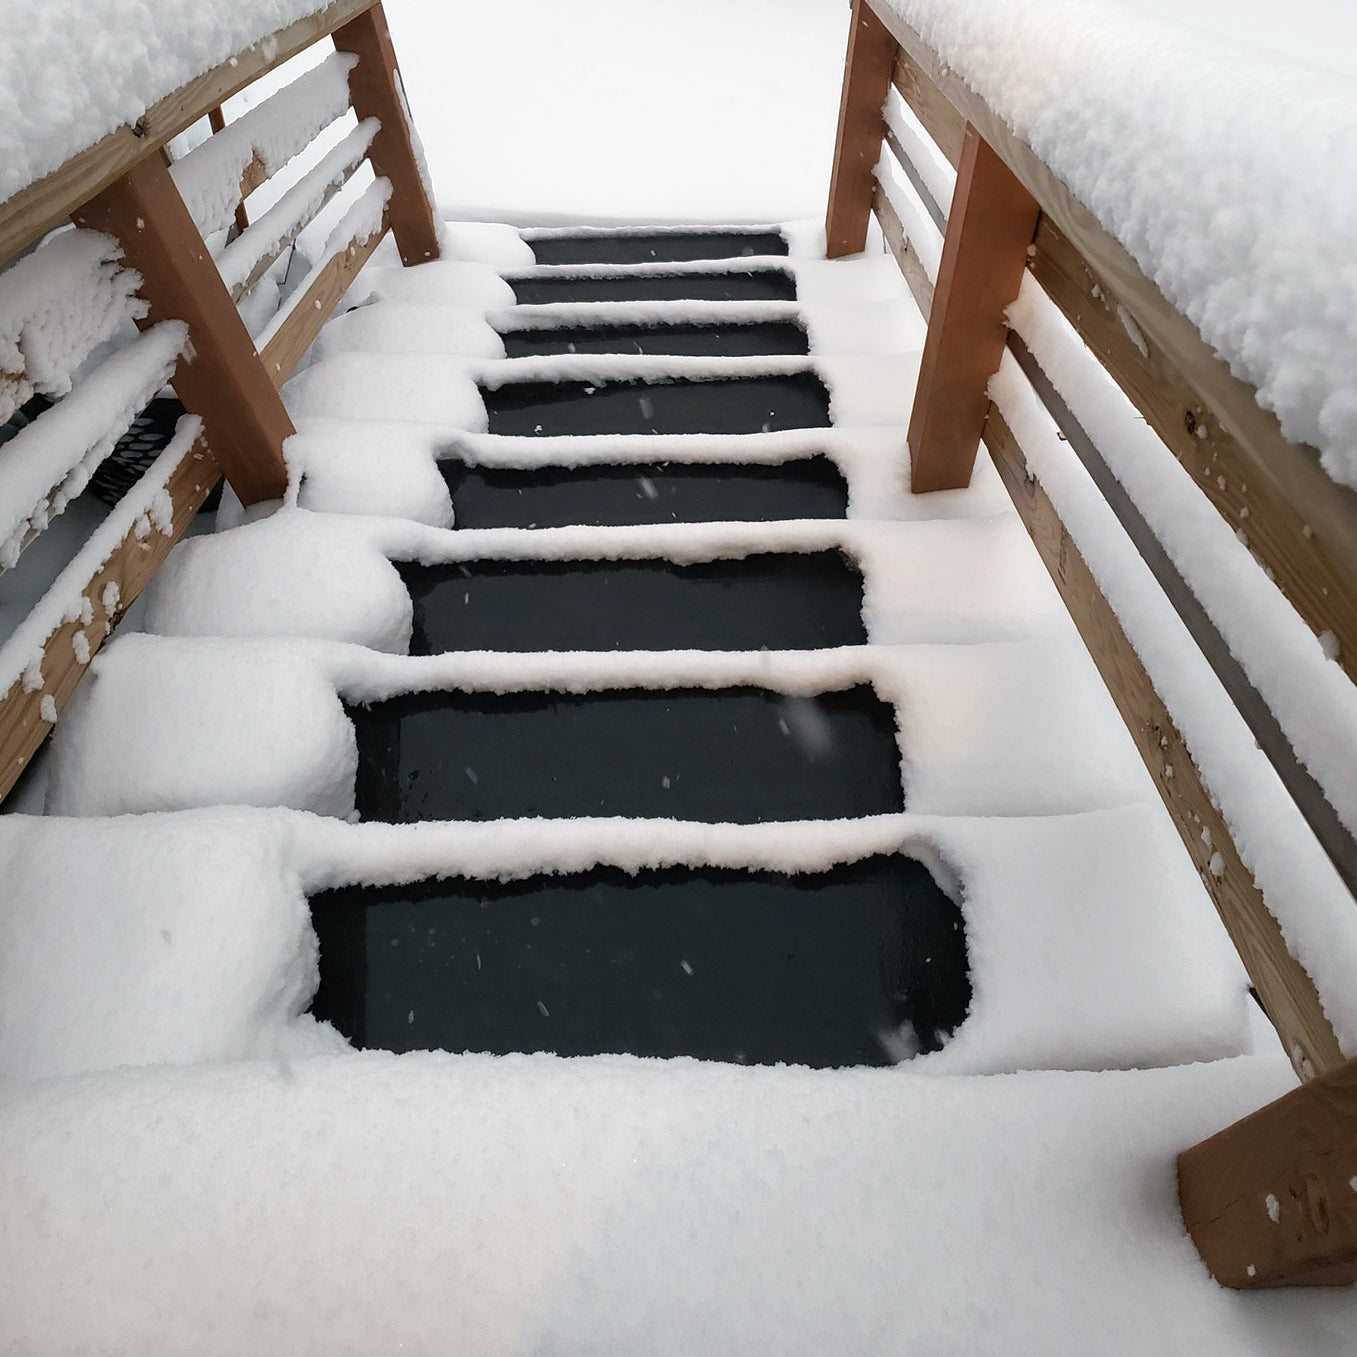 HeatTrak HR10-30 Residential Snow-Melting Stair Mat, 10 inch by 30 inch, 120 Volt